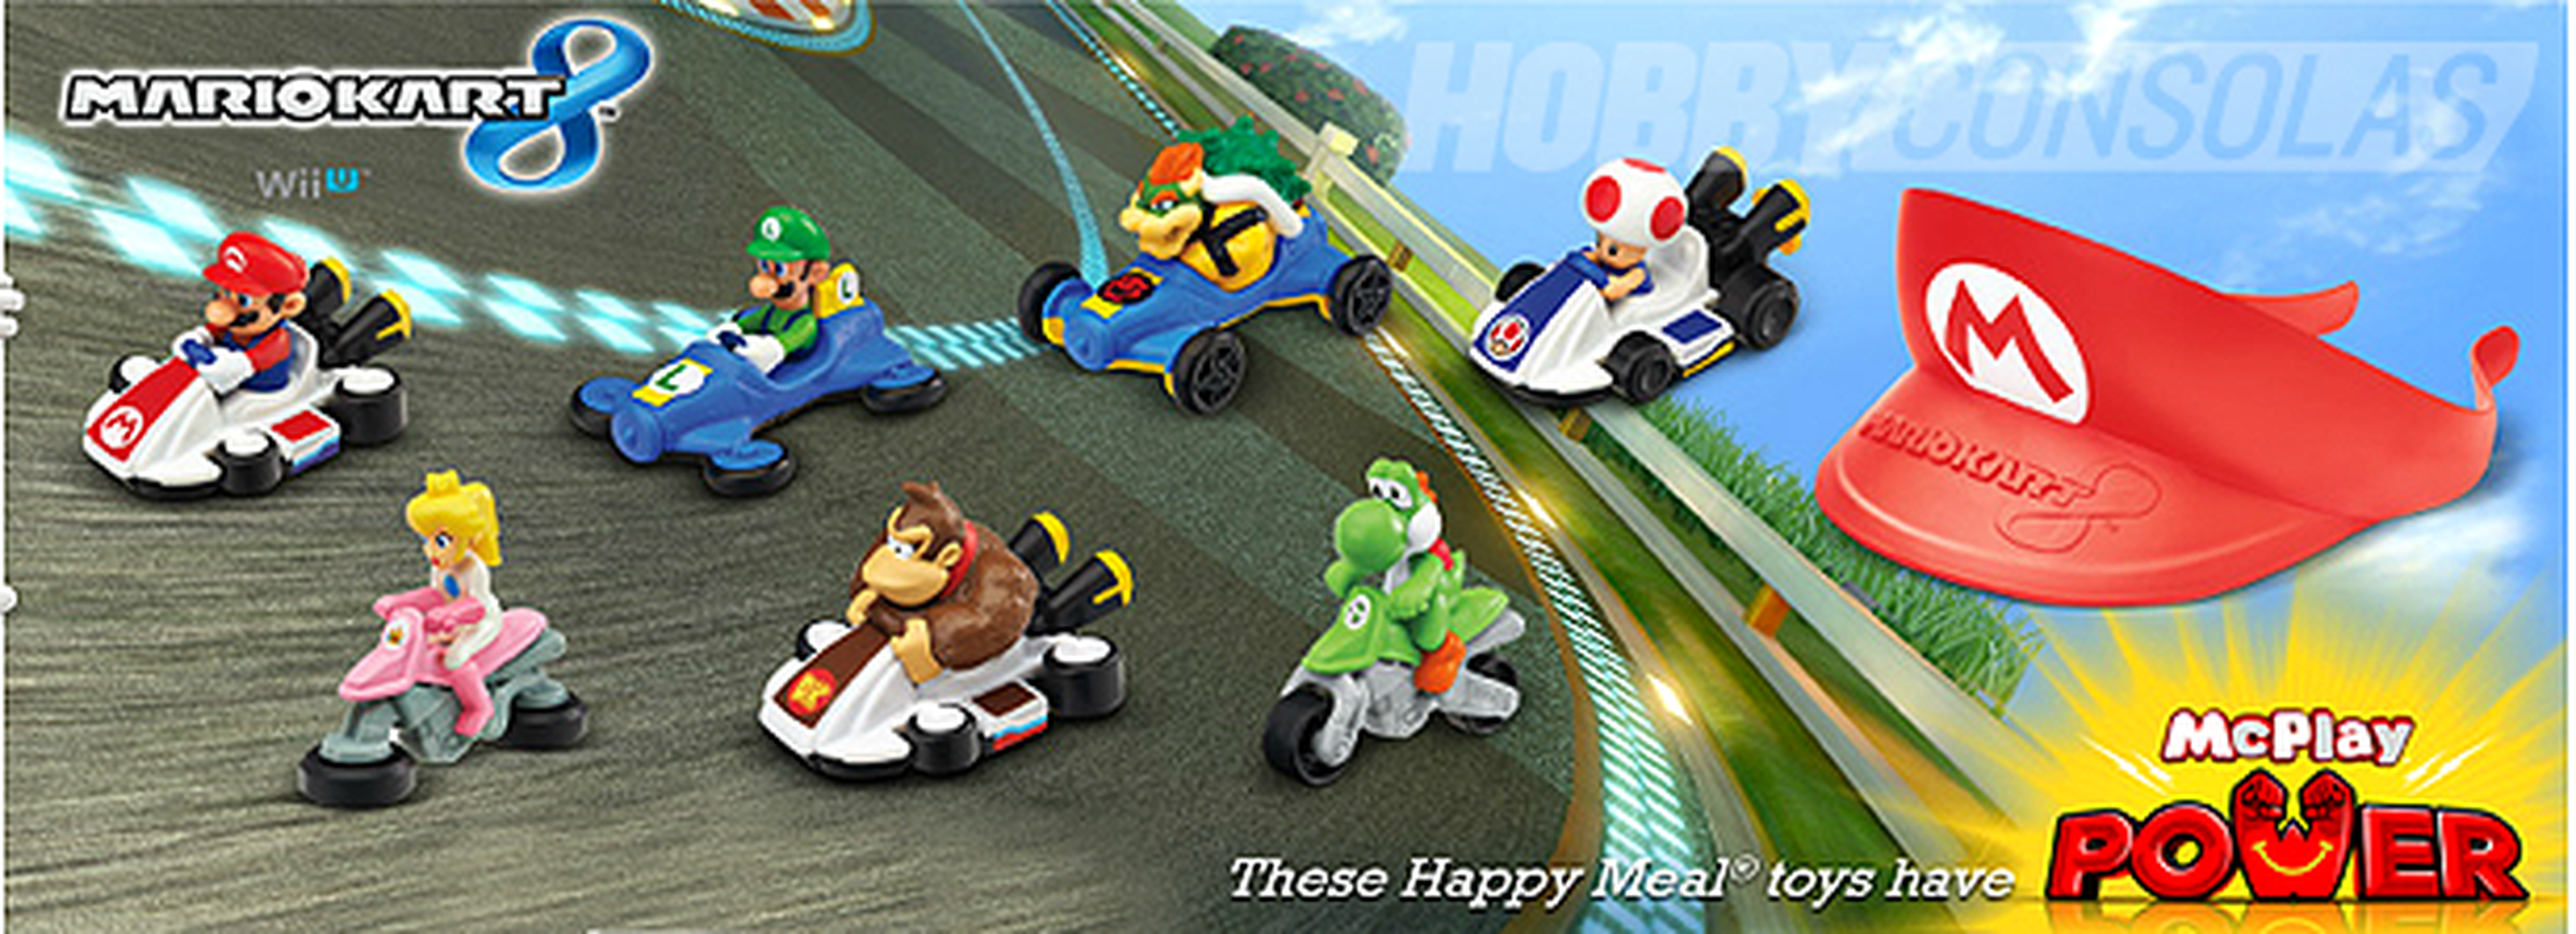 Los juguetes de Mario Kart 8 llegan a los Happy Meal de McDonald's